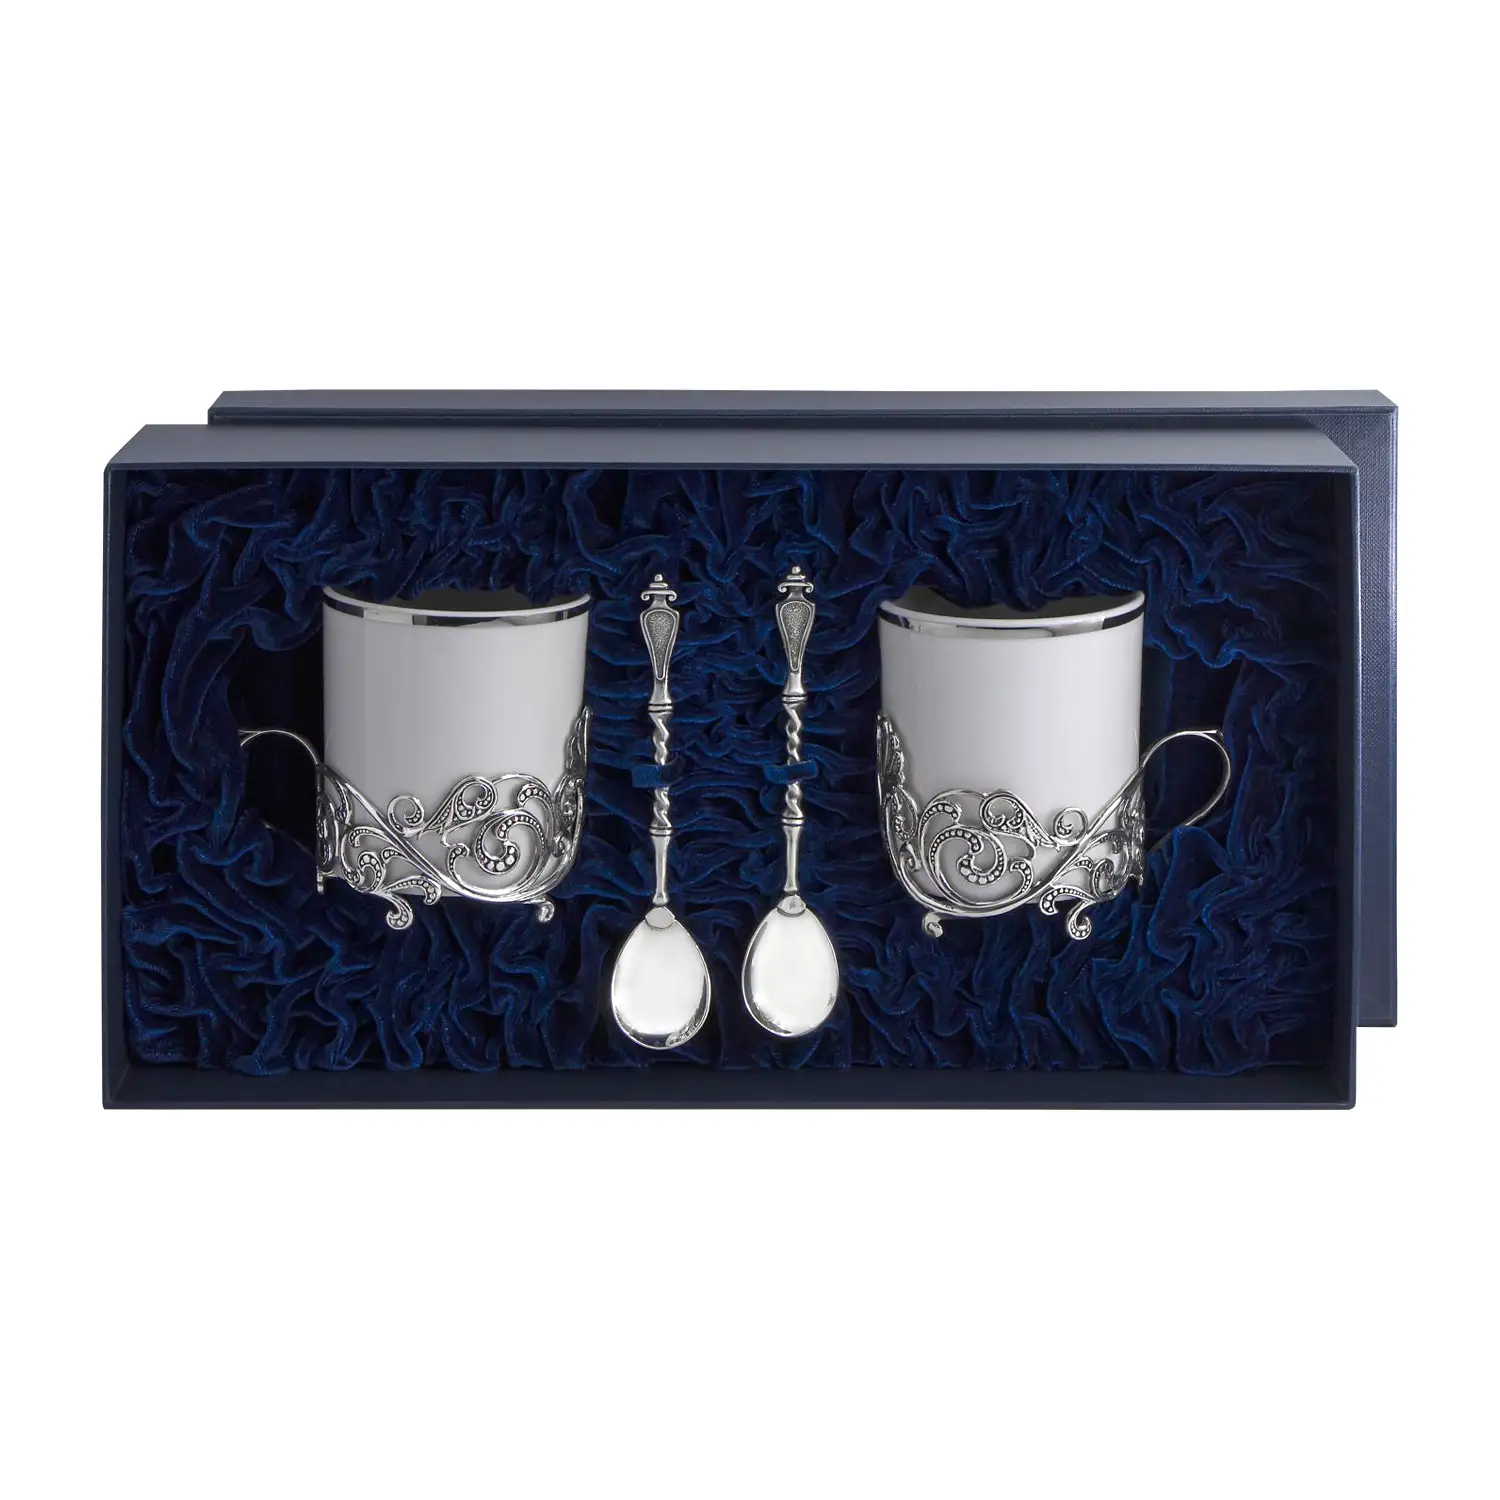 Набор чайных чашек Витая: ложка, чашка (Серебро 925) набор чайных чашек витая ложка чашка серебро 925